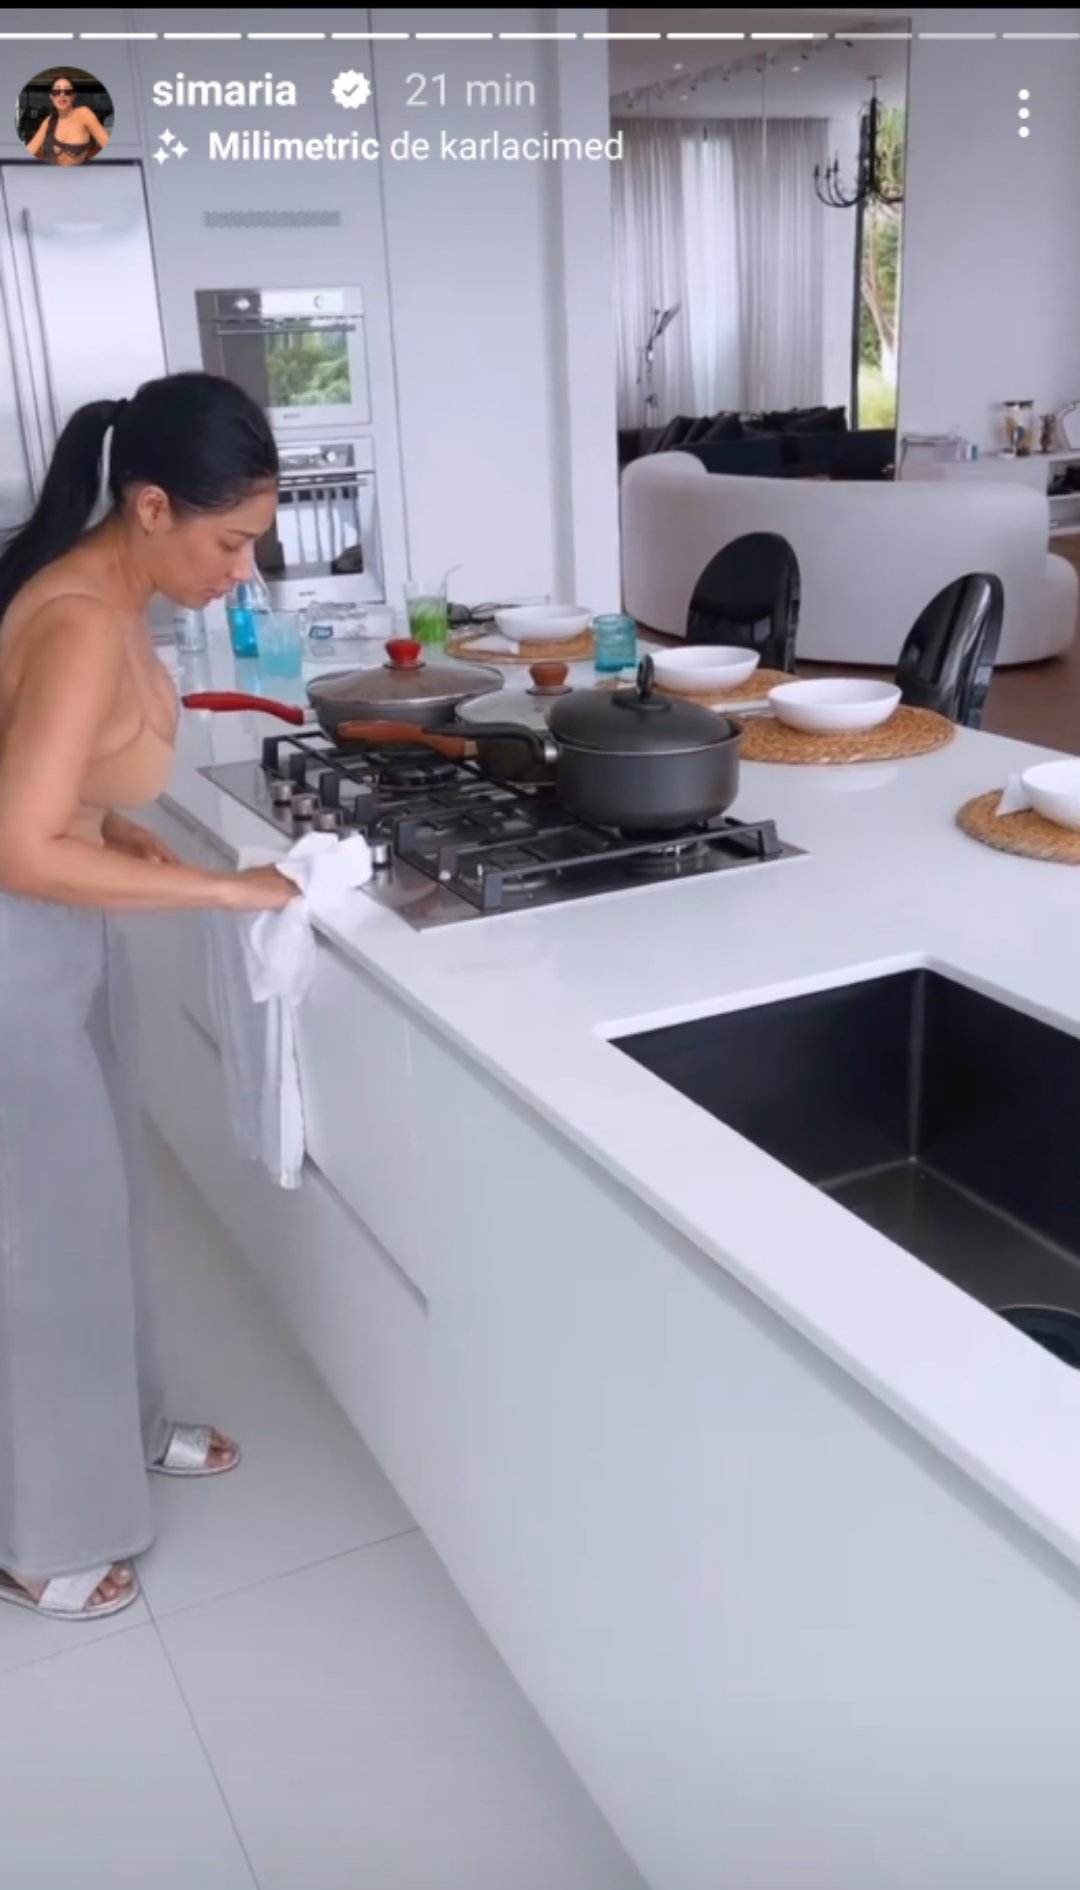 Simaria mostra sua cozinha